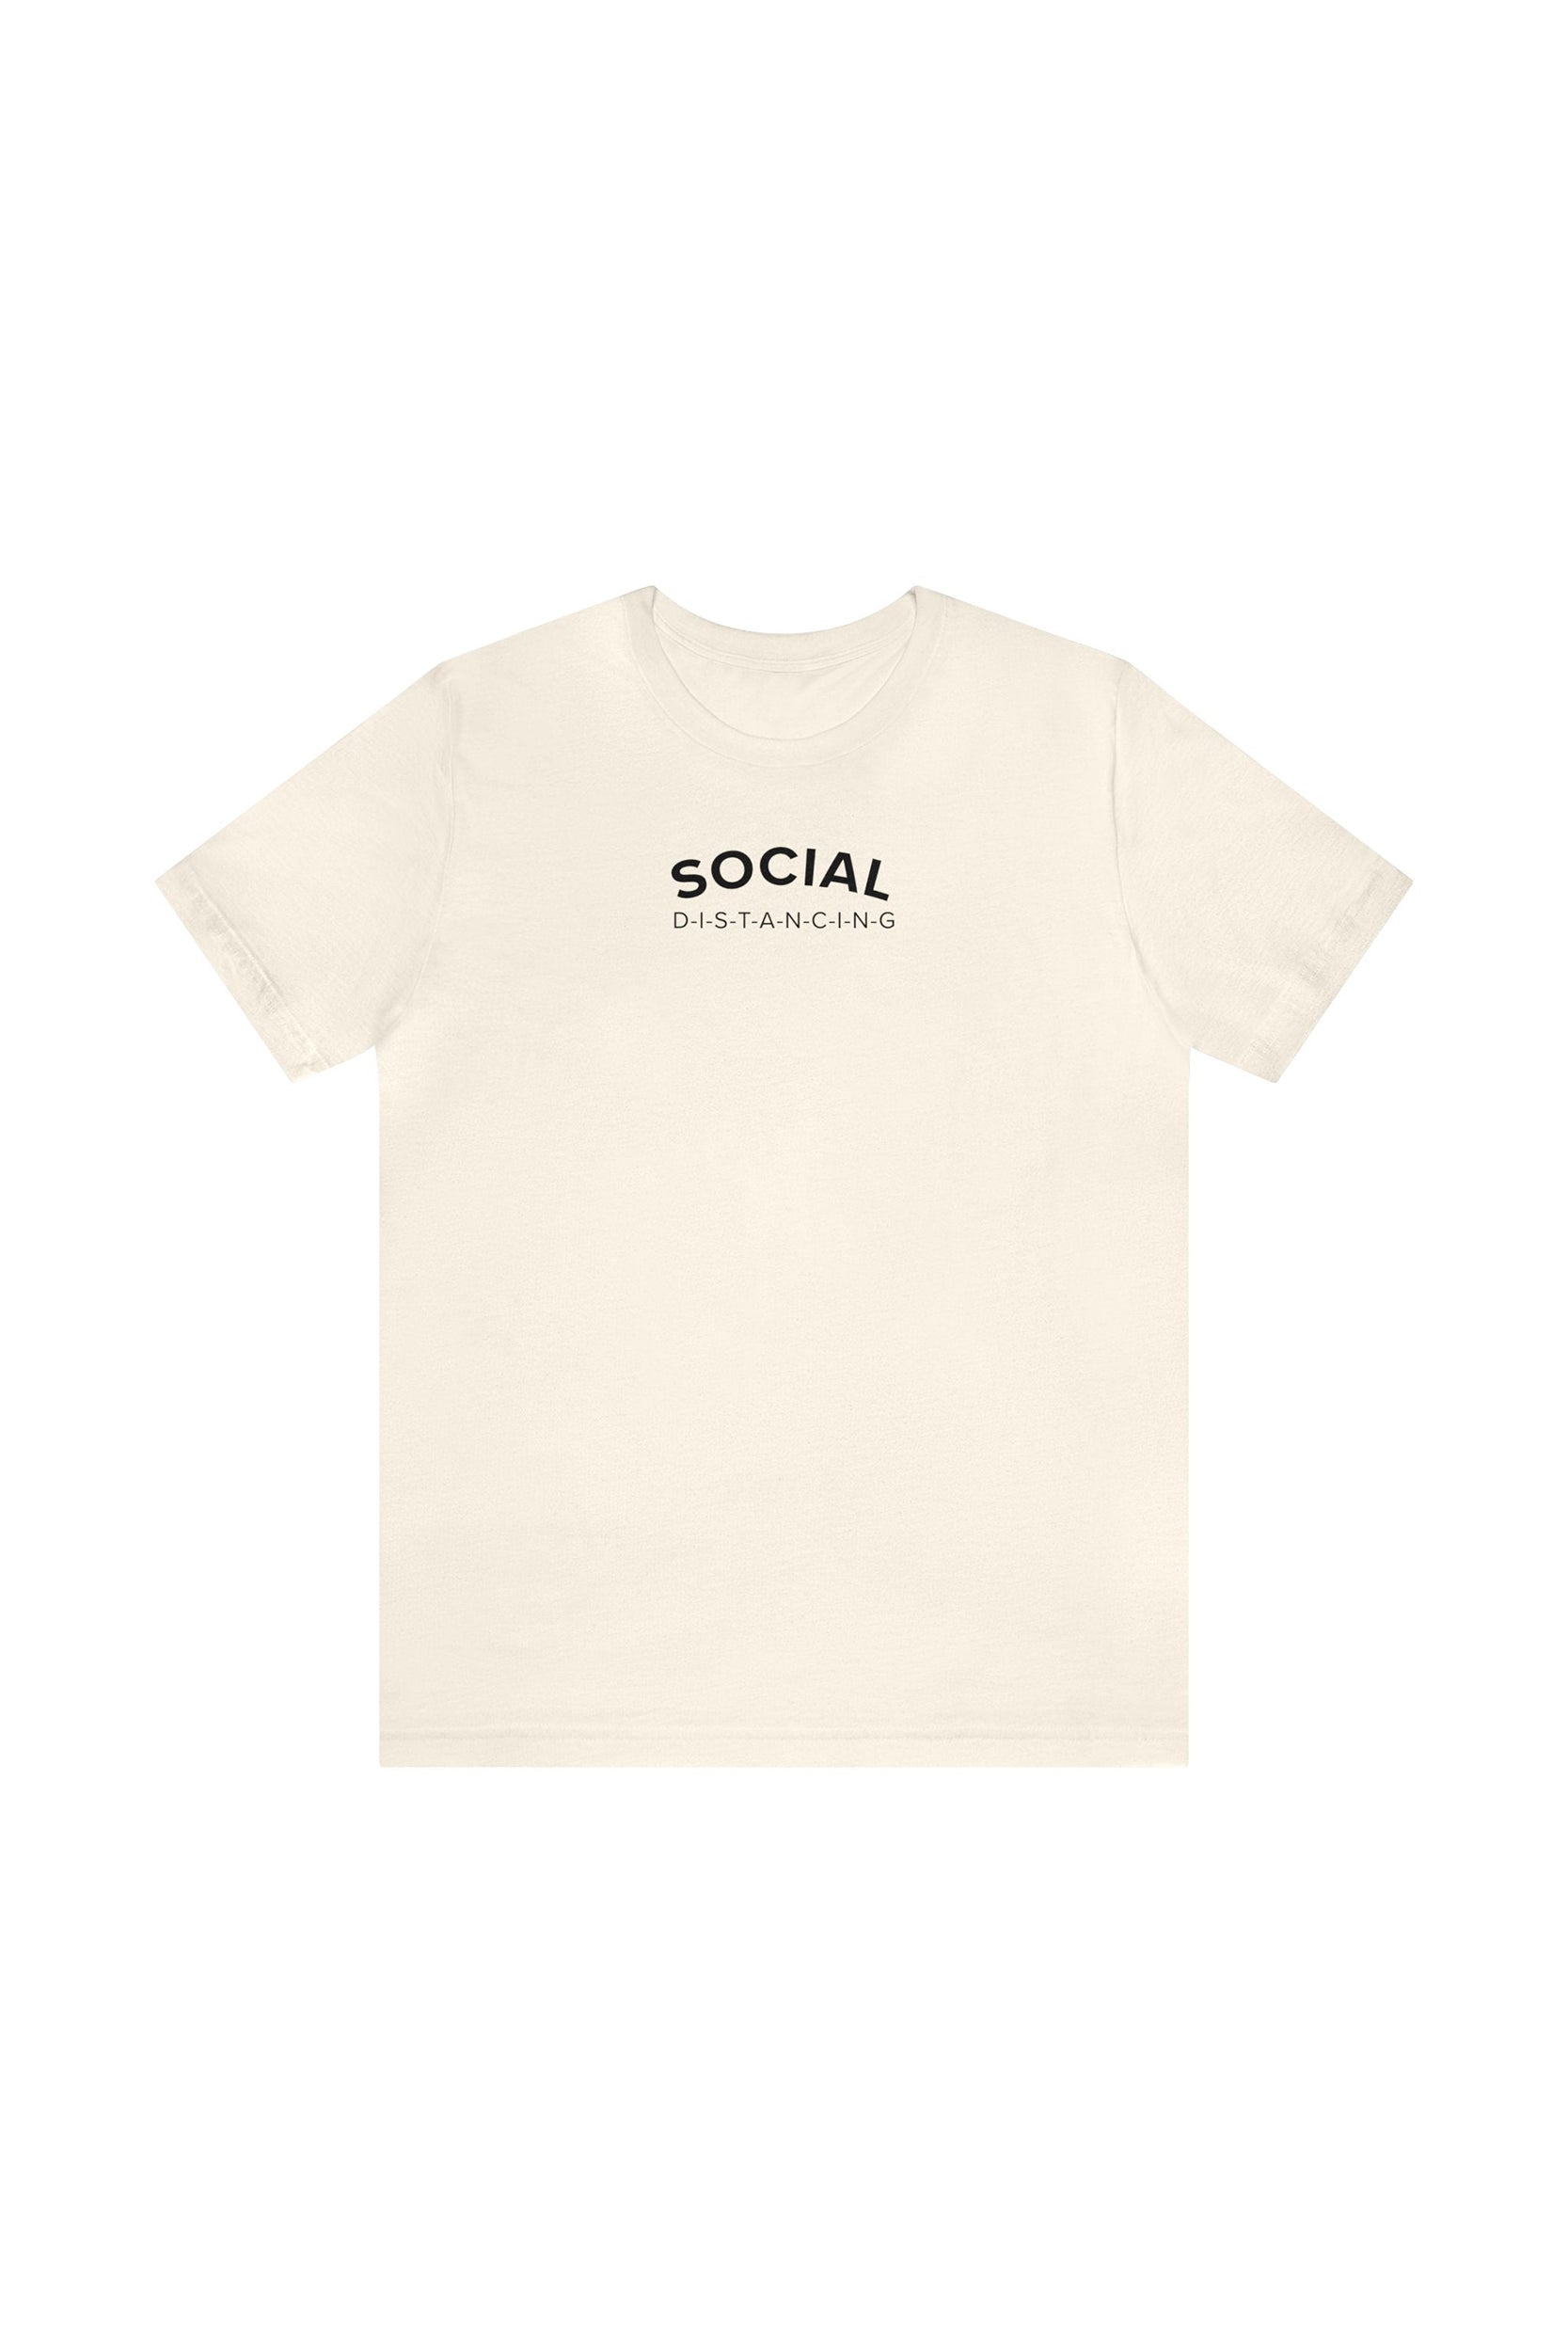 "Social D-I-S-T-A-N-C-I-N-G" T-Shirt